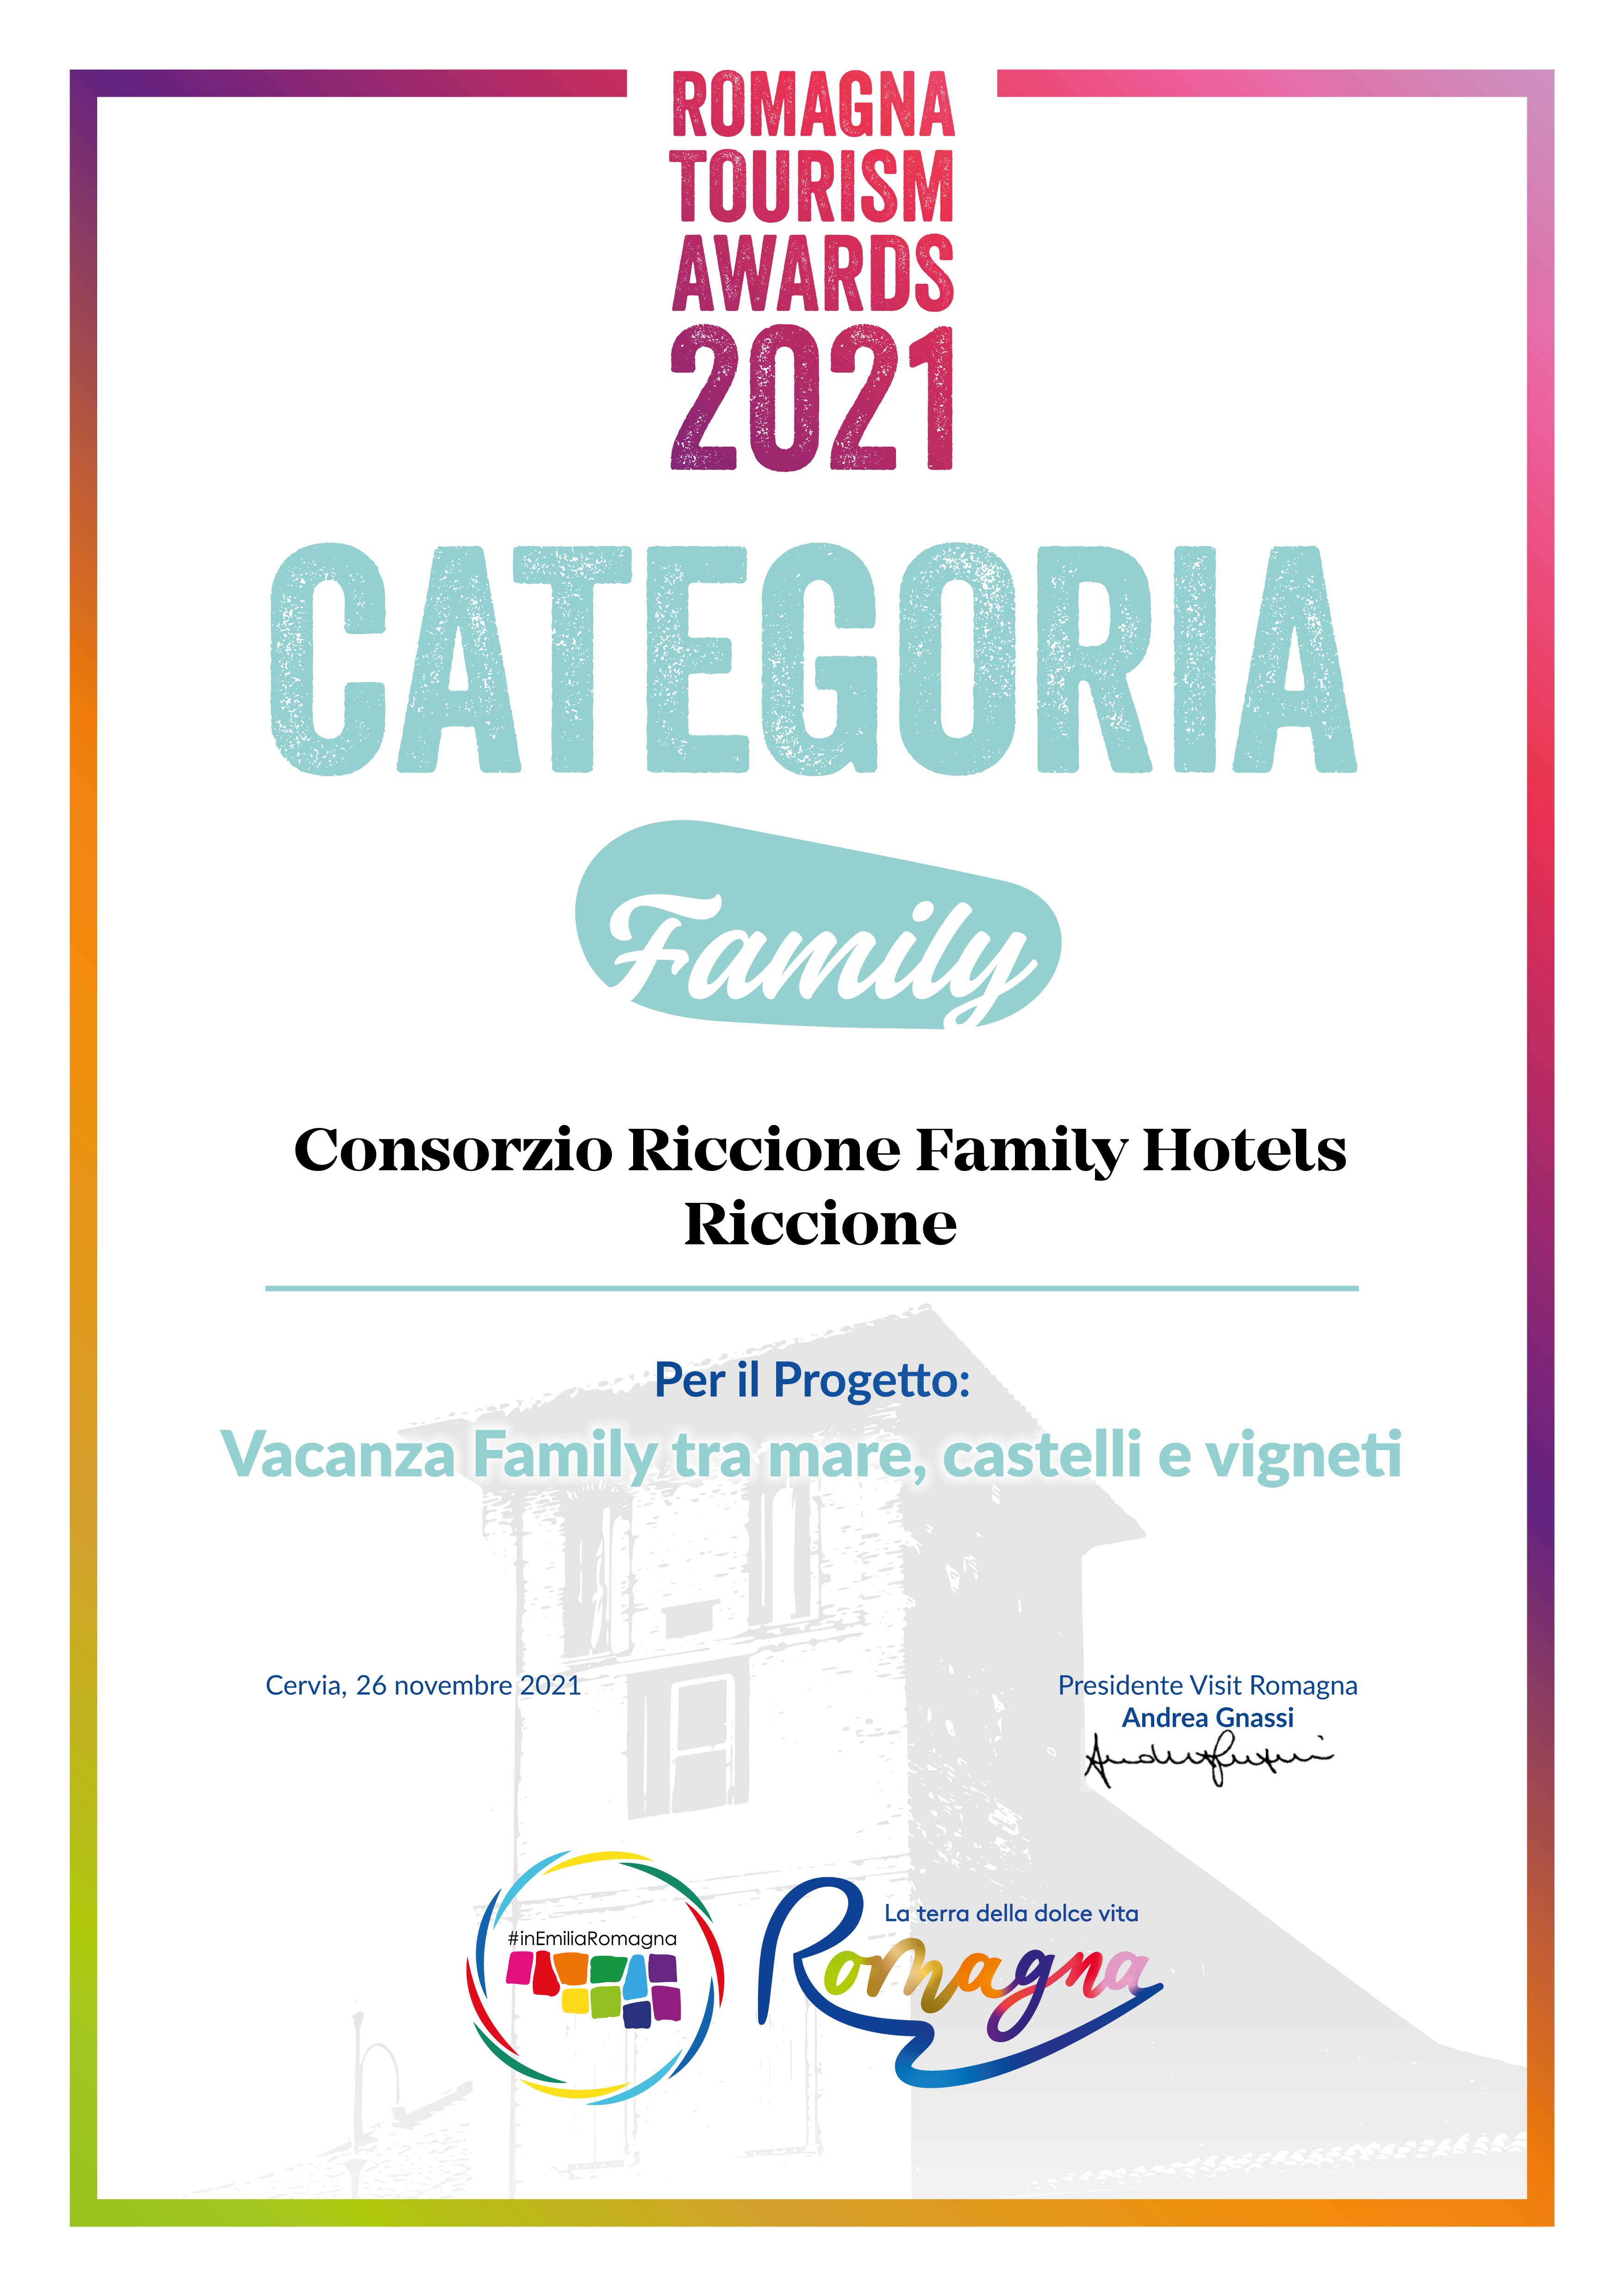 Consorzio Riccione Family Hotels | Riccione